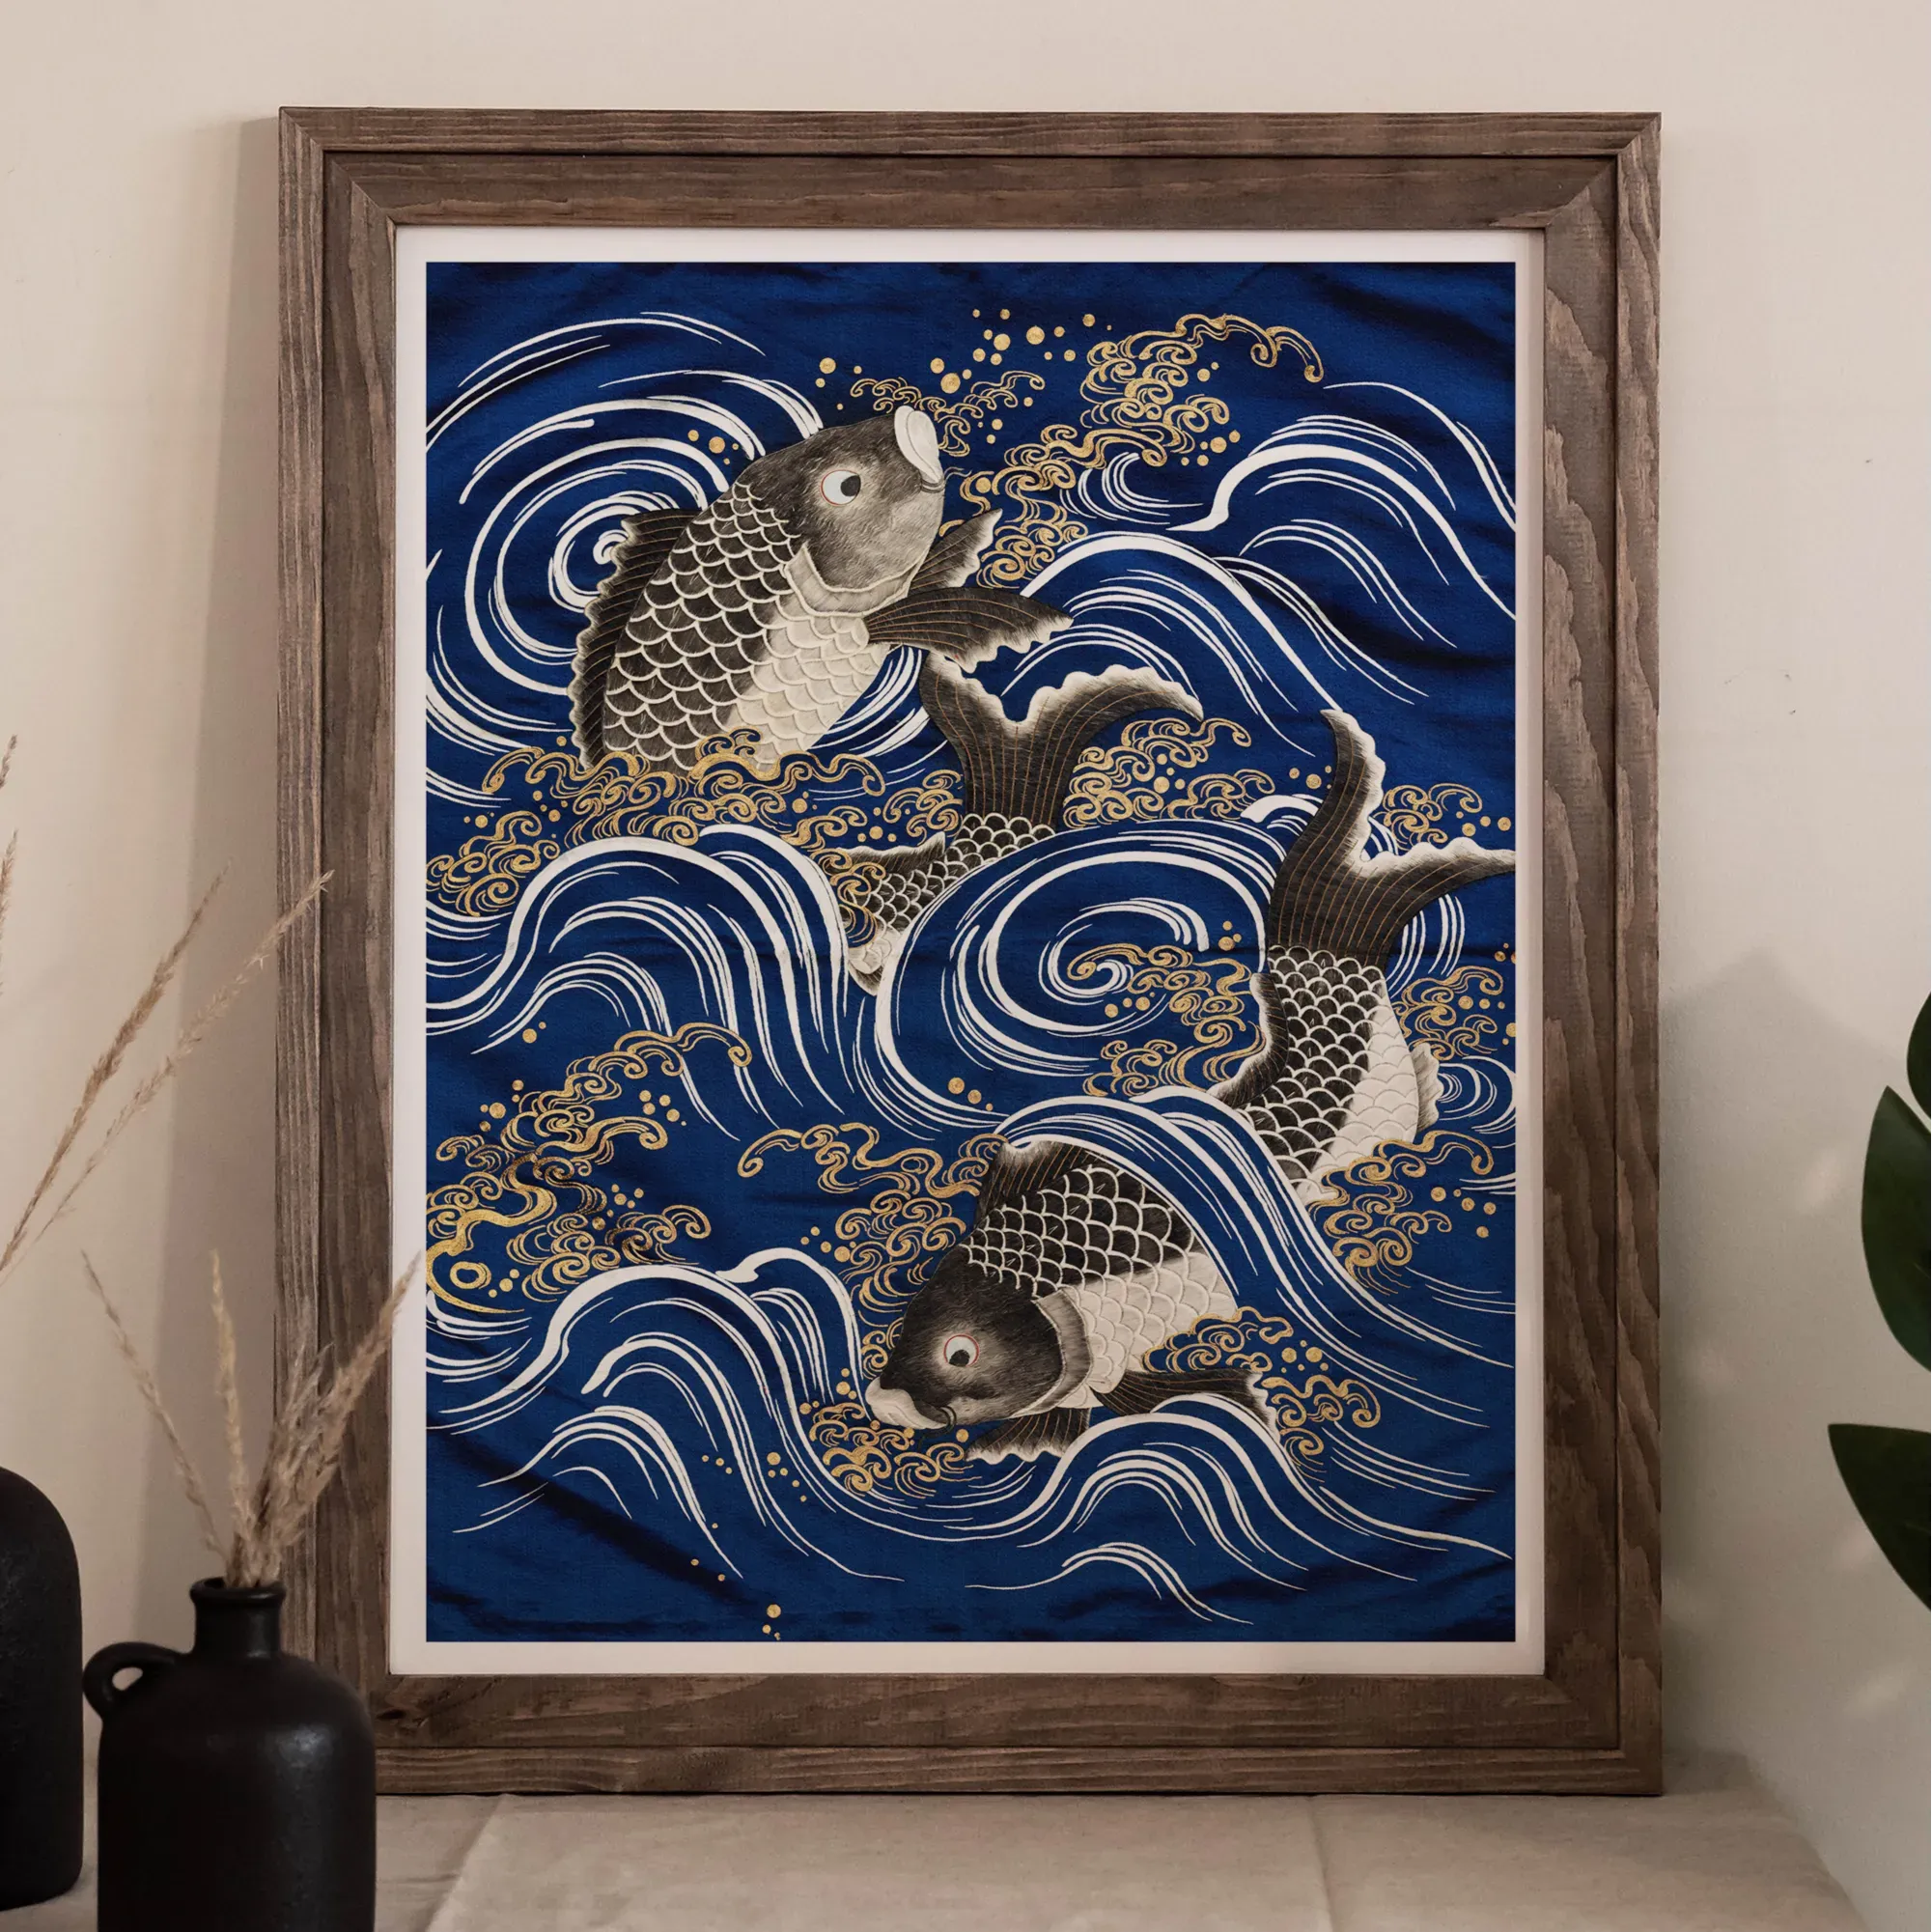 Fukusa And Carp In Waves - Meiji Period Art Print - Posters Prints & Visual Artwork - Aesthetic Art